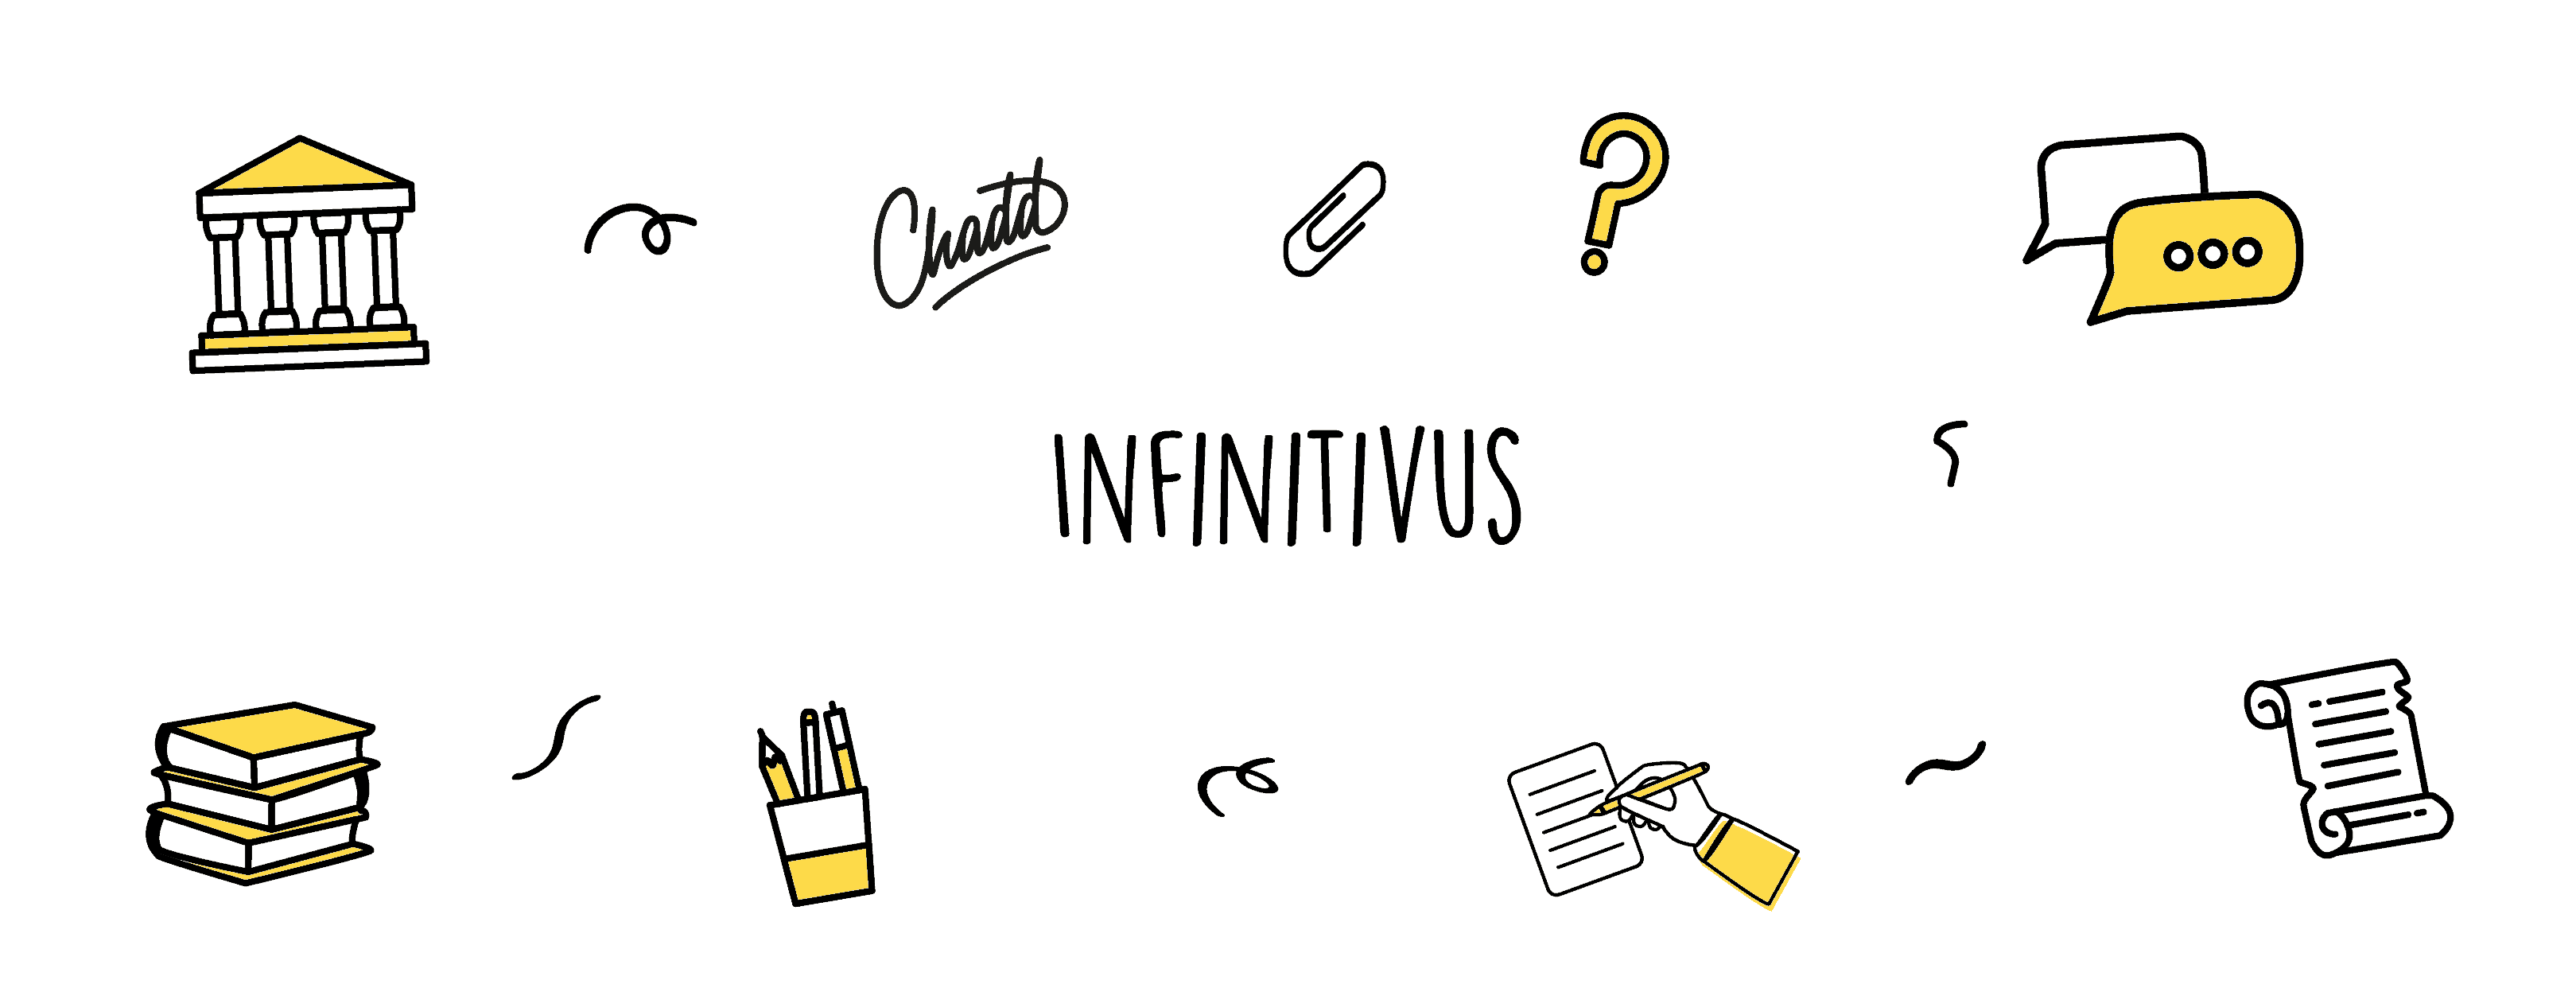 Infinitivus